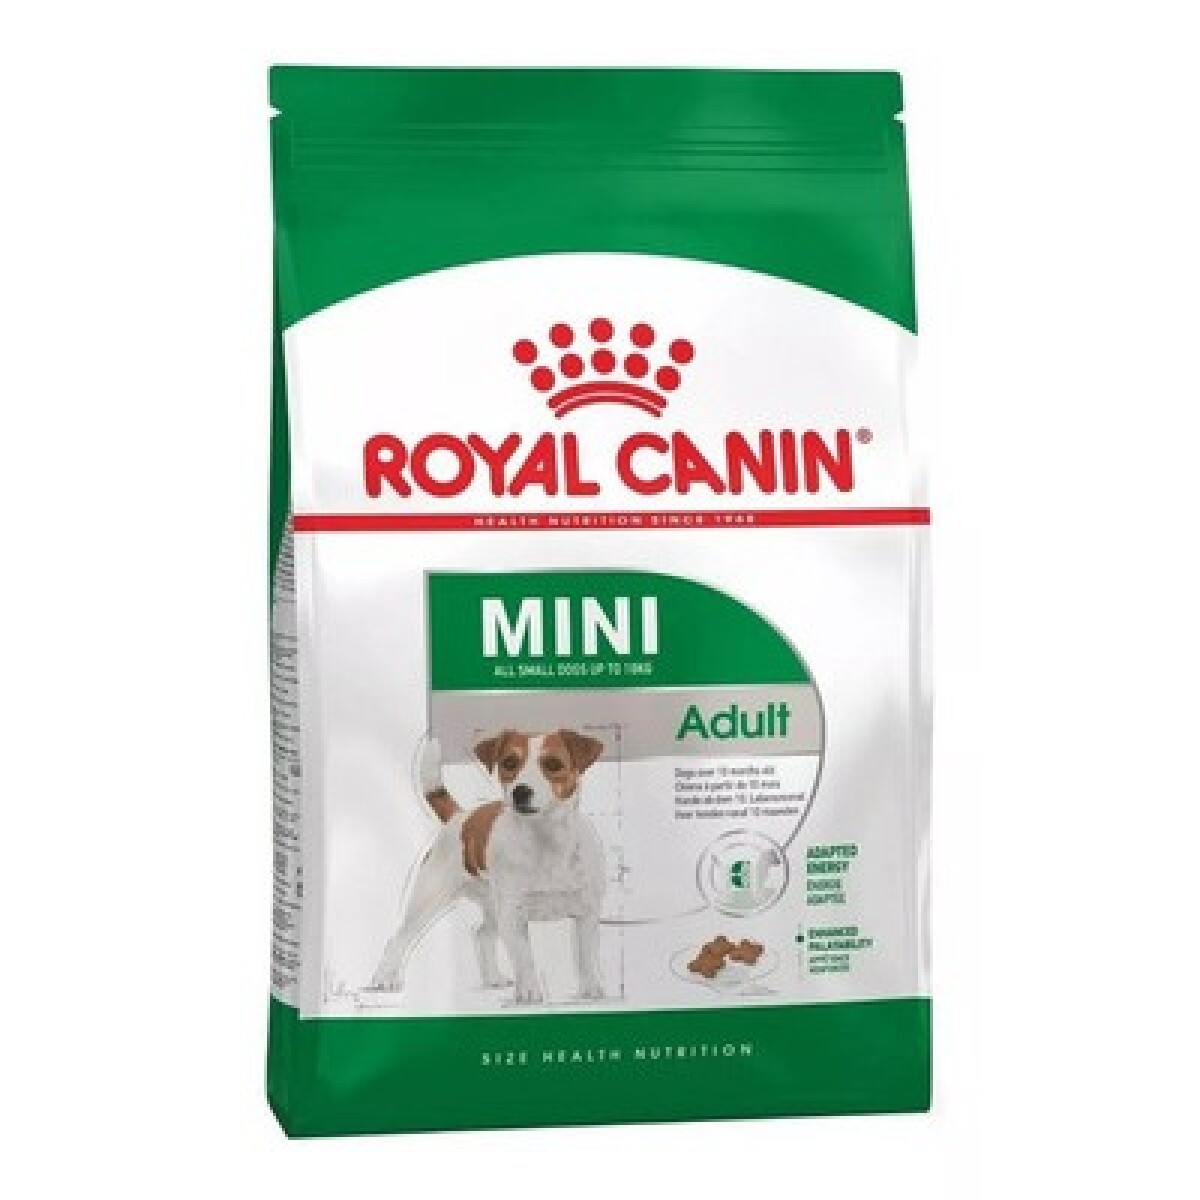 ROYAL CANIN MINI ADULT 3 KG - Unica 